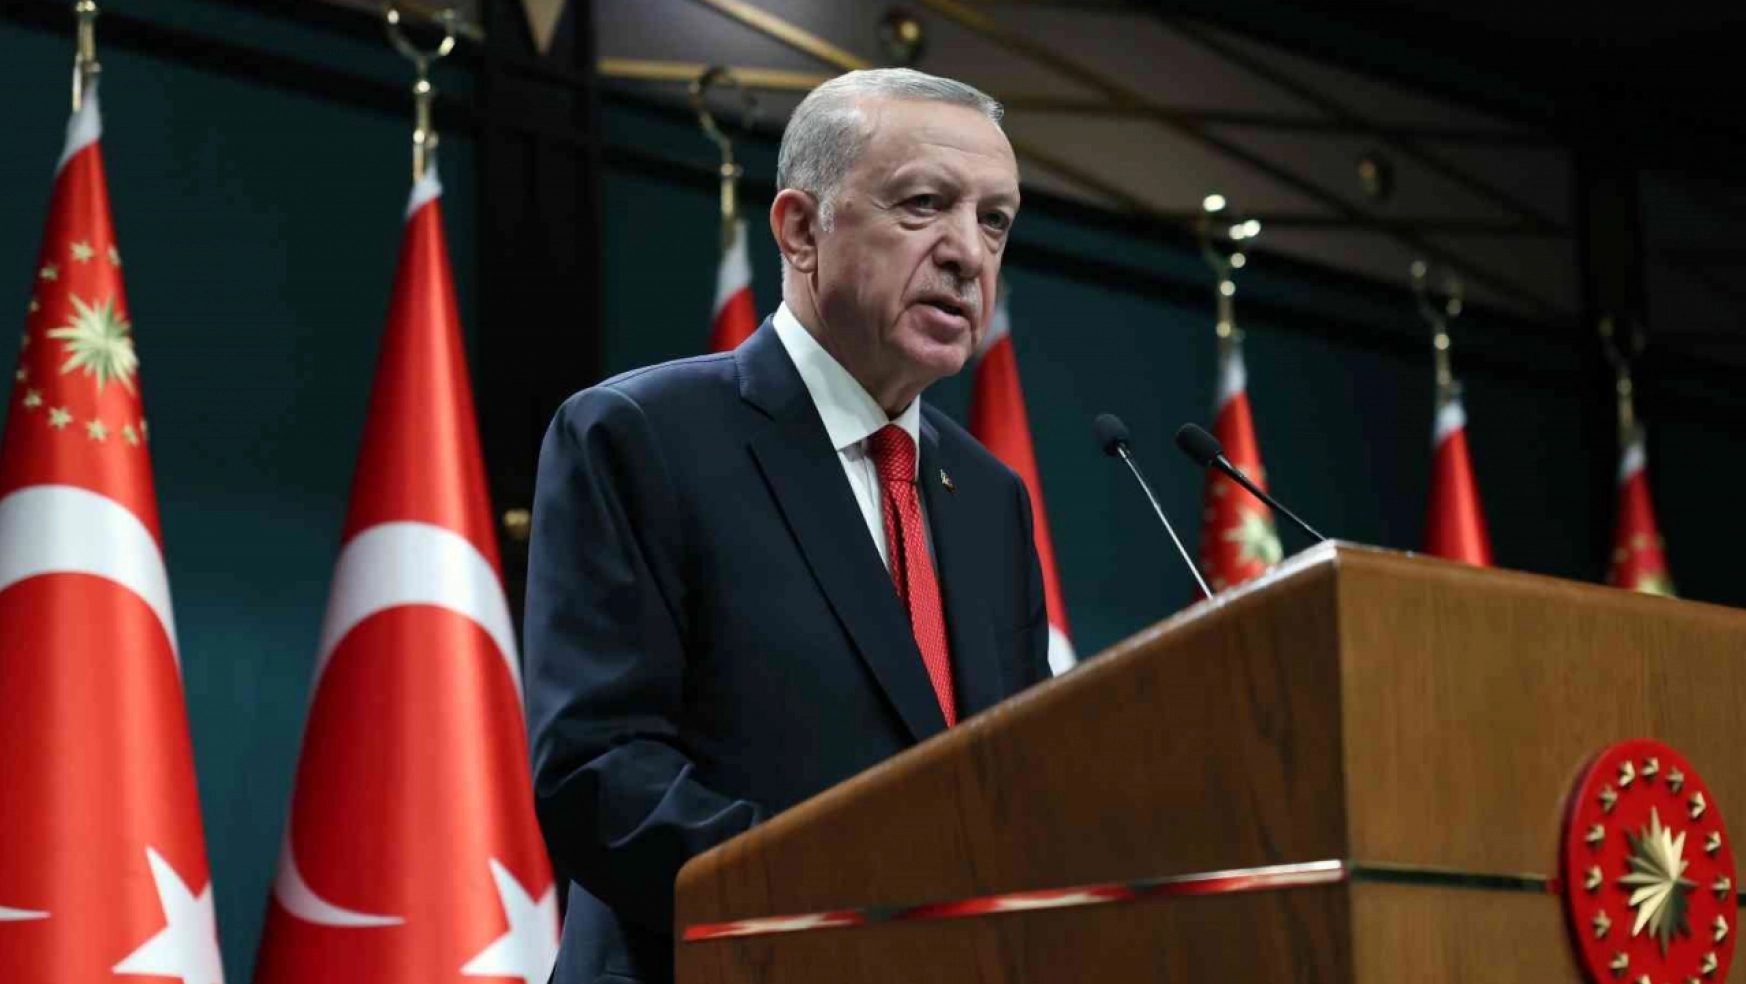 Cumhurbaşkanı Erdoğan'dan sözleşmeli personele kadro müjdesi